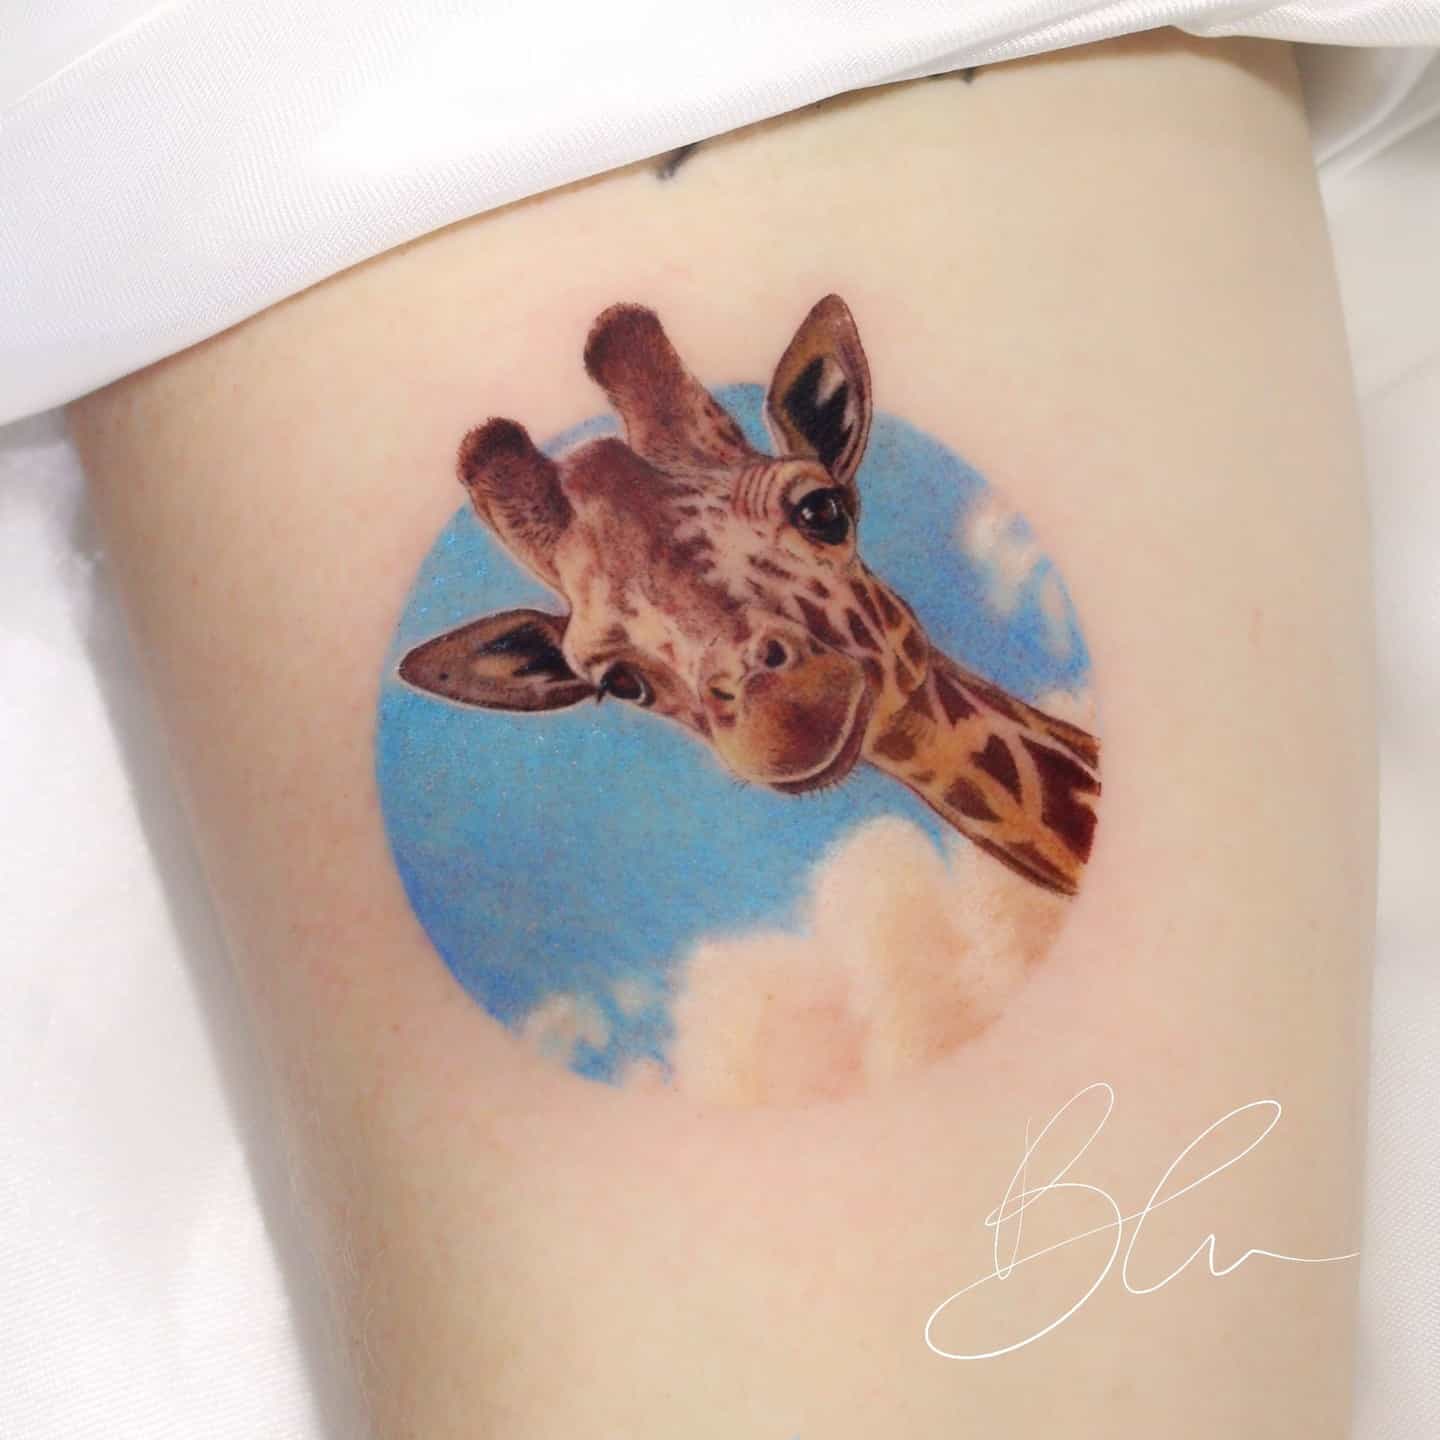 Giraffe tattoo by blu.tattoo